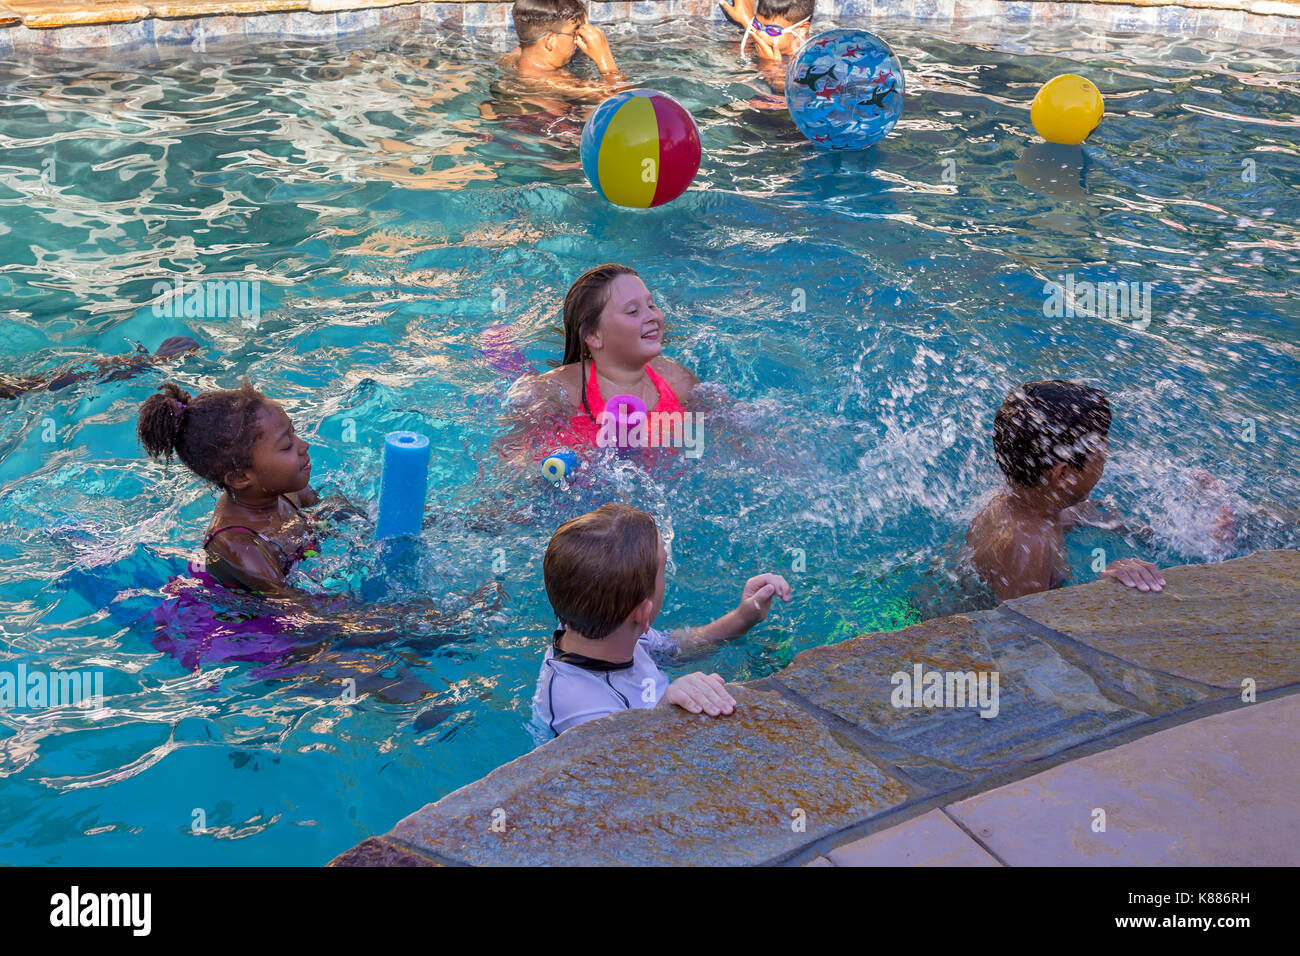 Les filles, les garçons, les enfants, les projections, les projections d'eau, piscine d'eau douce, pool party, Castro Valley, comté d'Alameda, Californie Banque D'Images